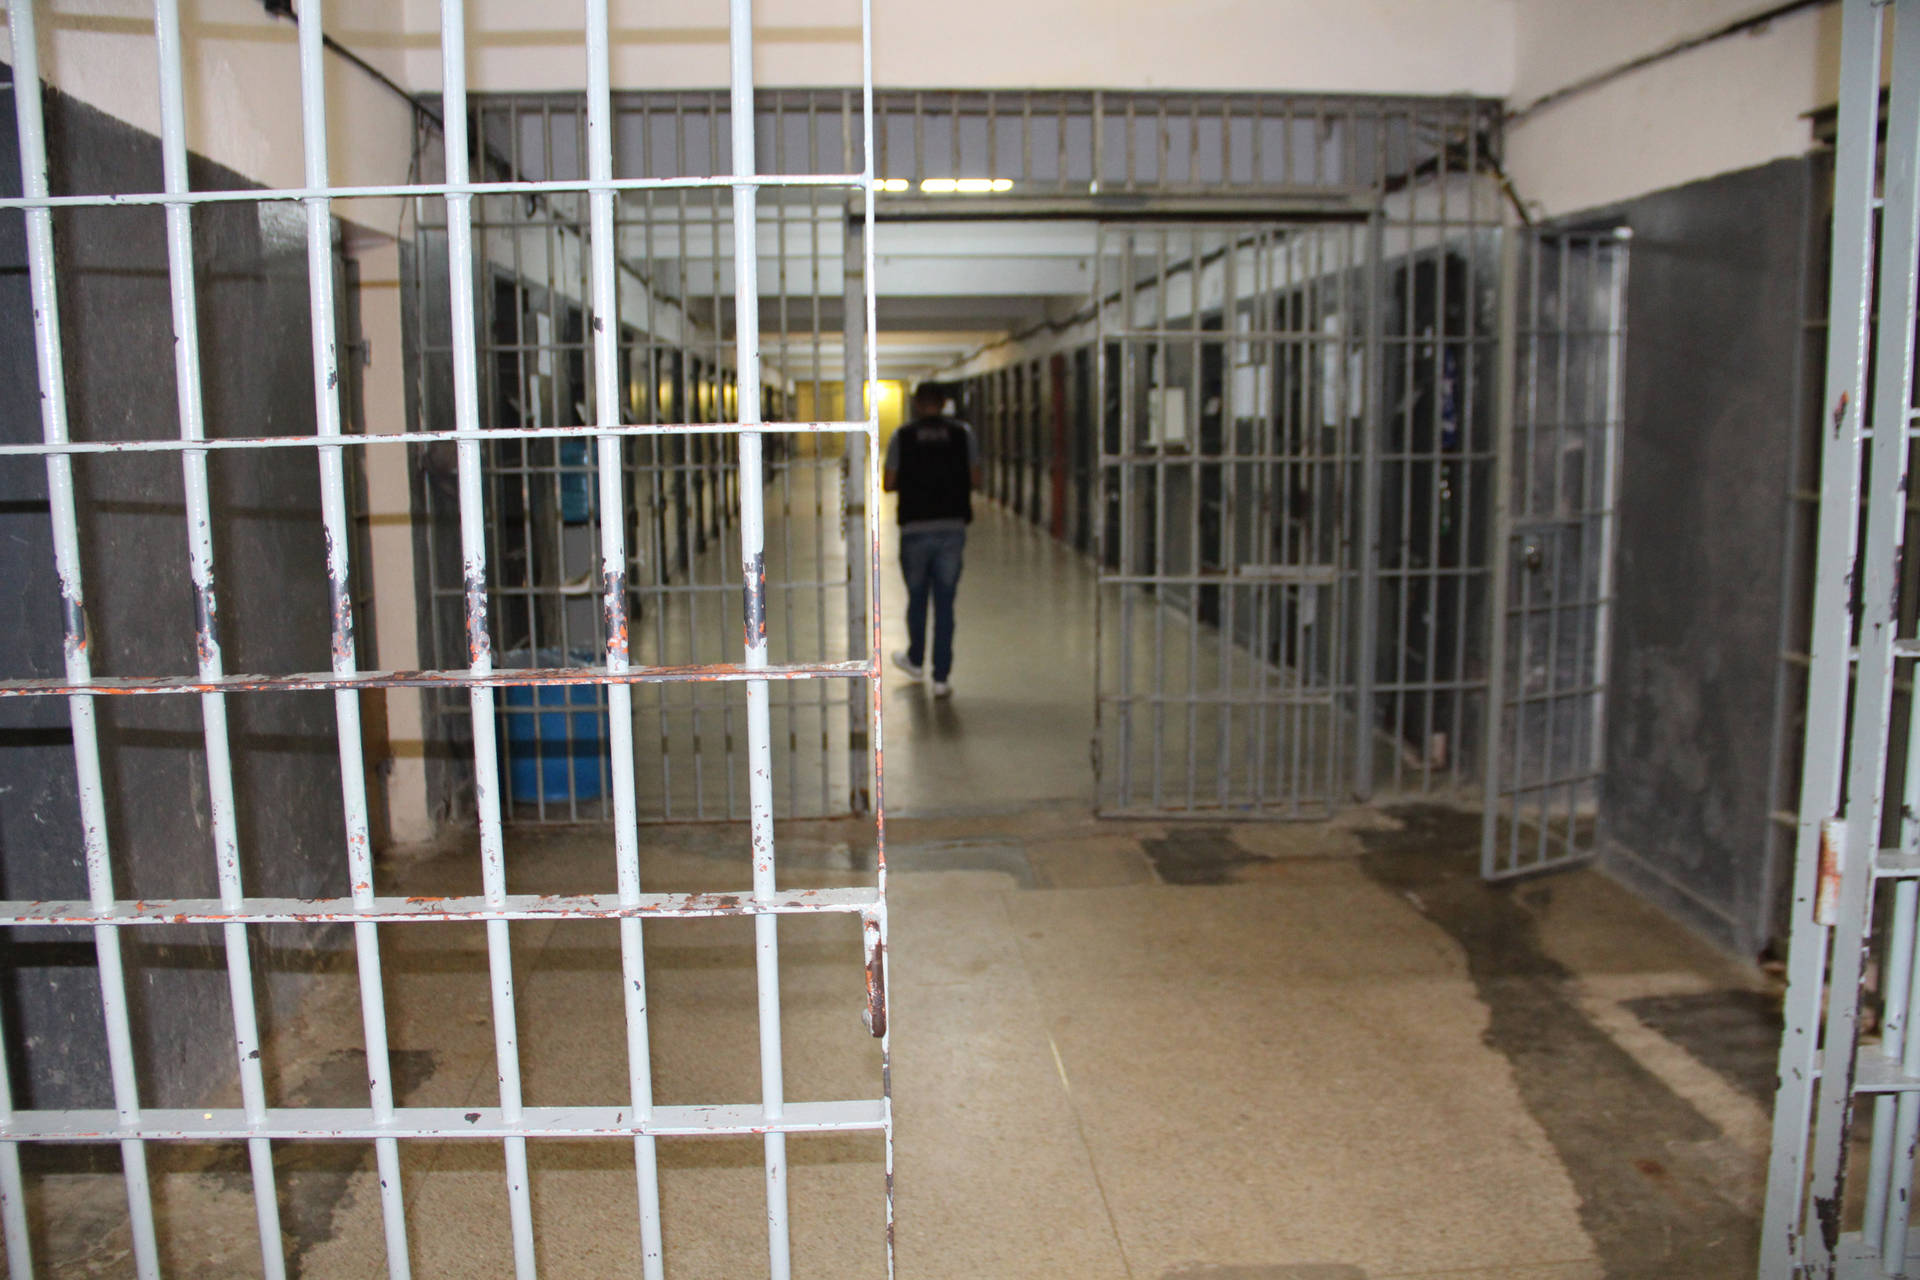  Portarias de saída temporária beneficiam mais de 1,6 mil presos